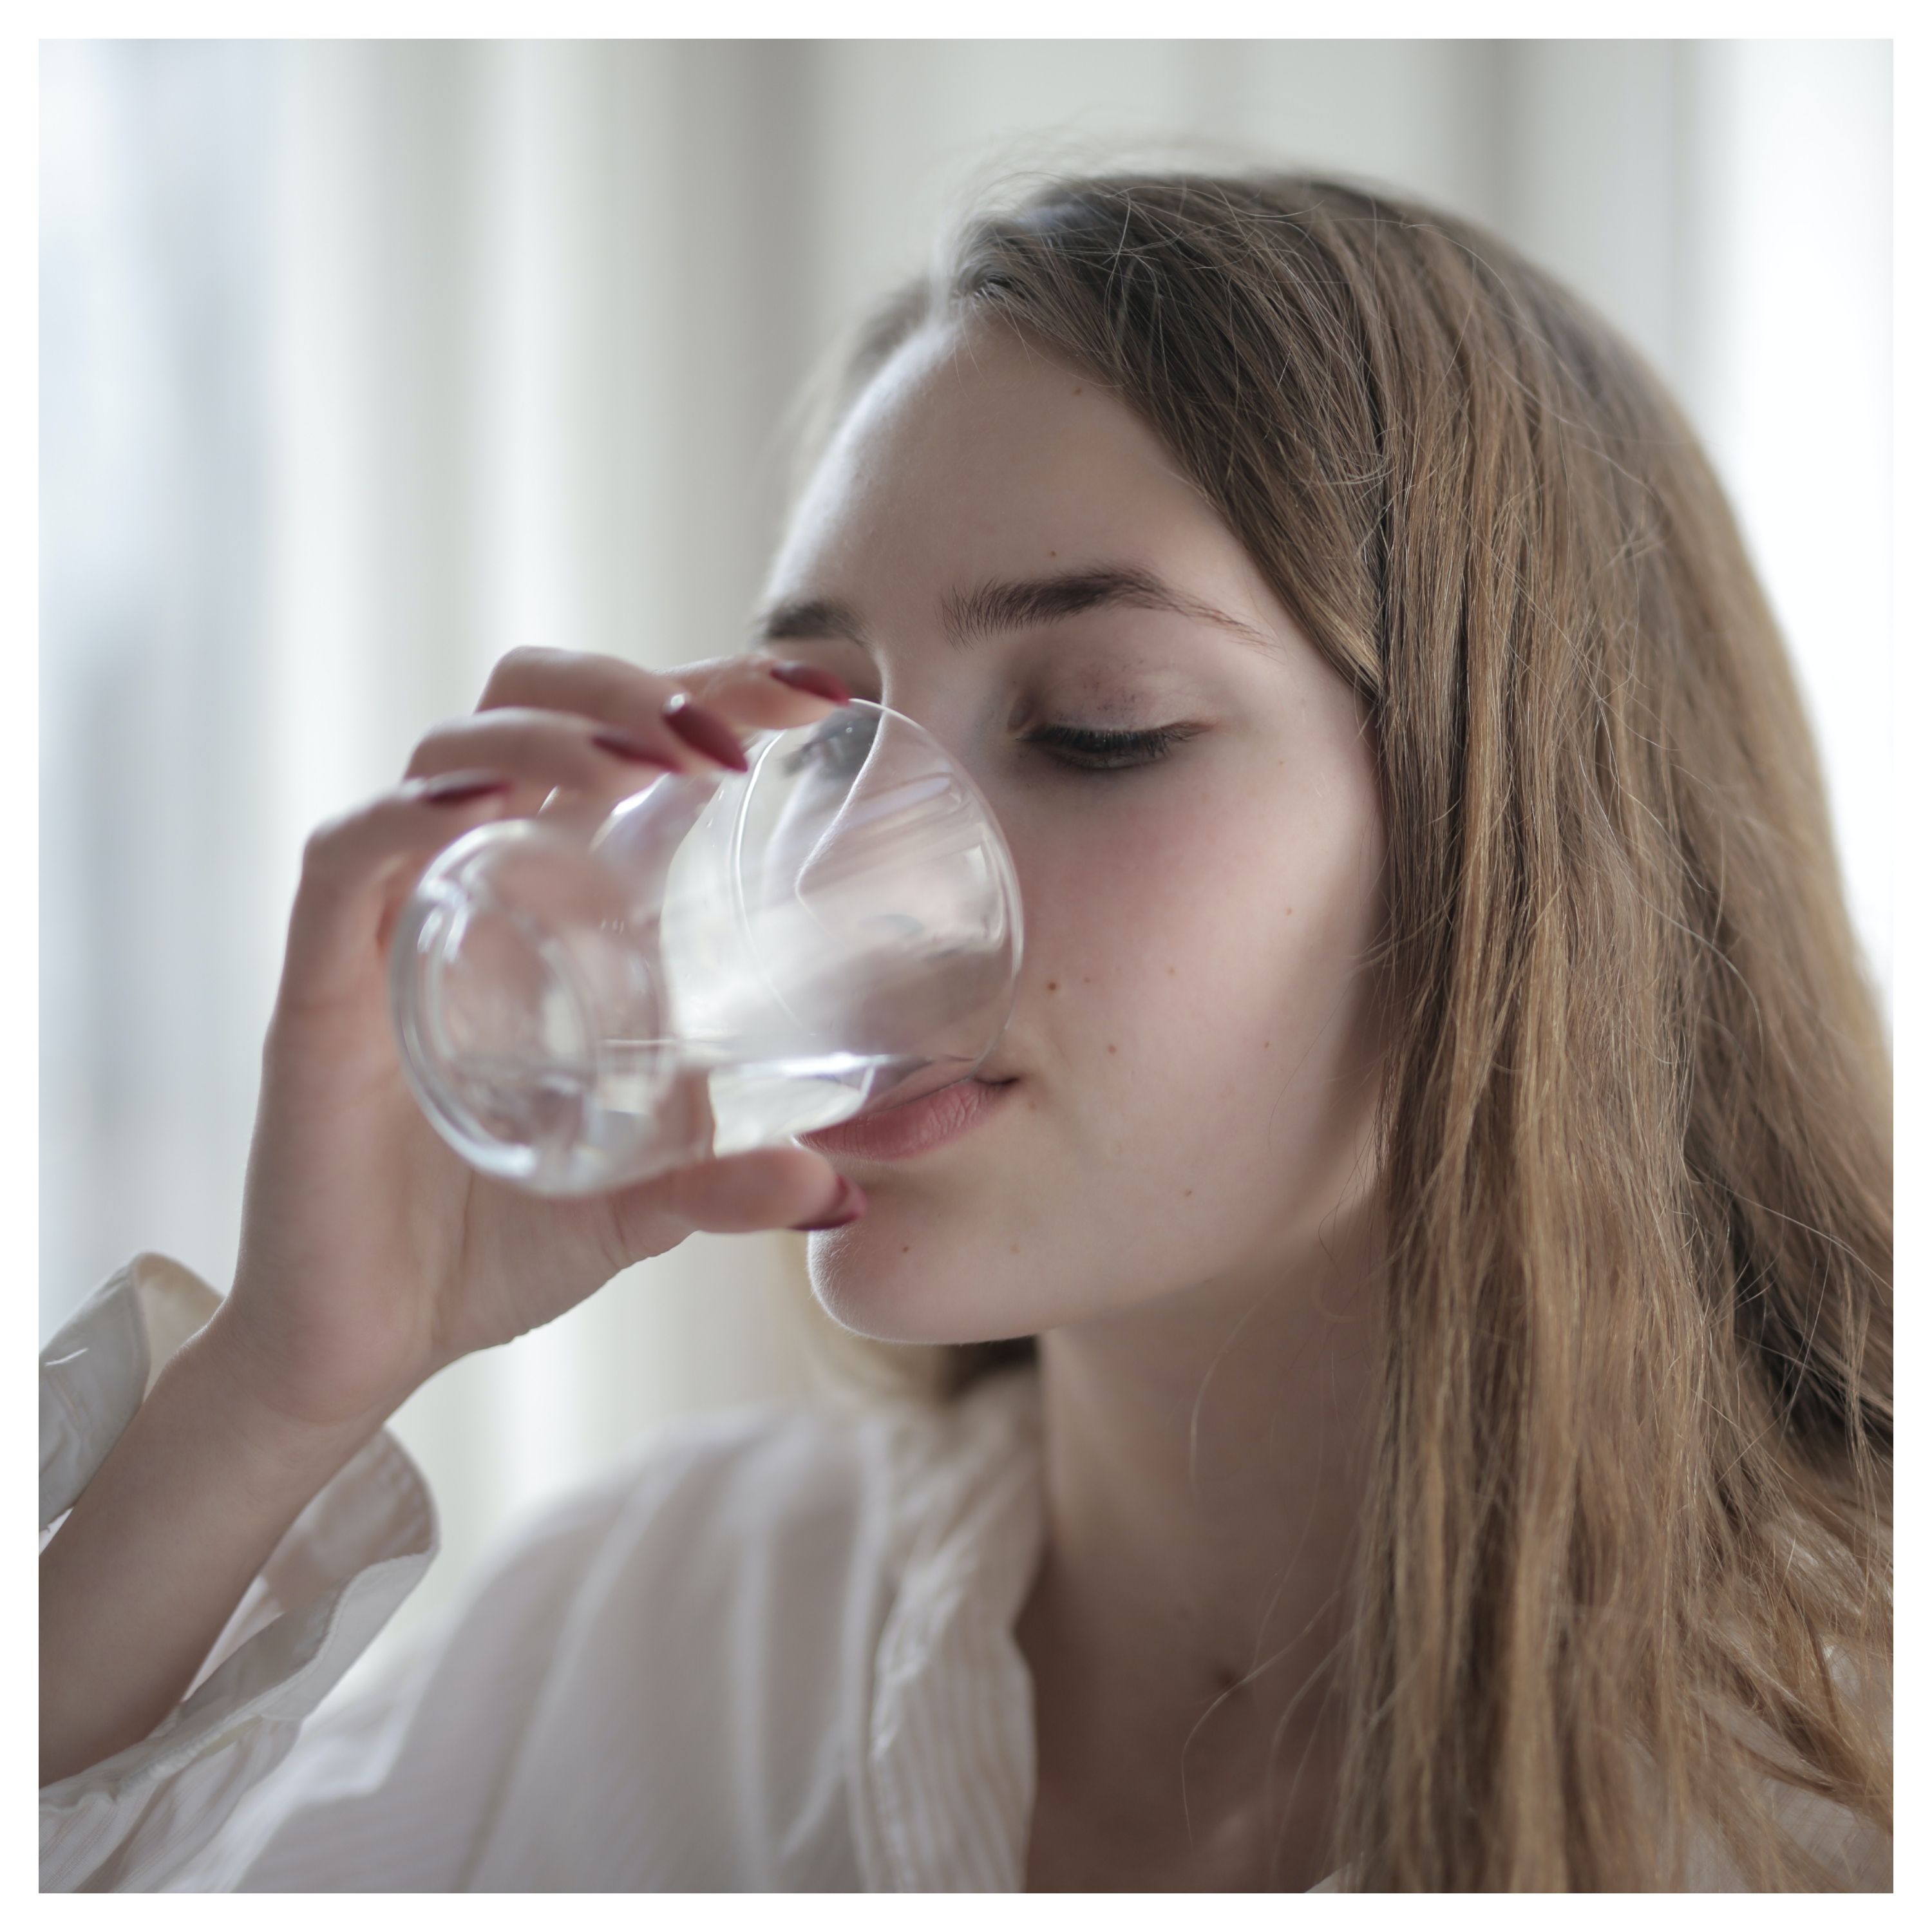 Une jeune femme boit de l'eau dans un verre